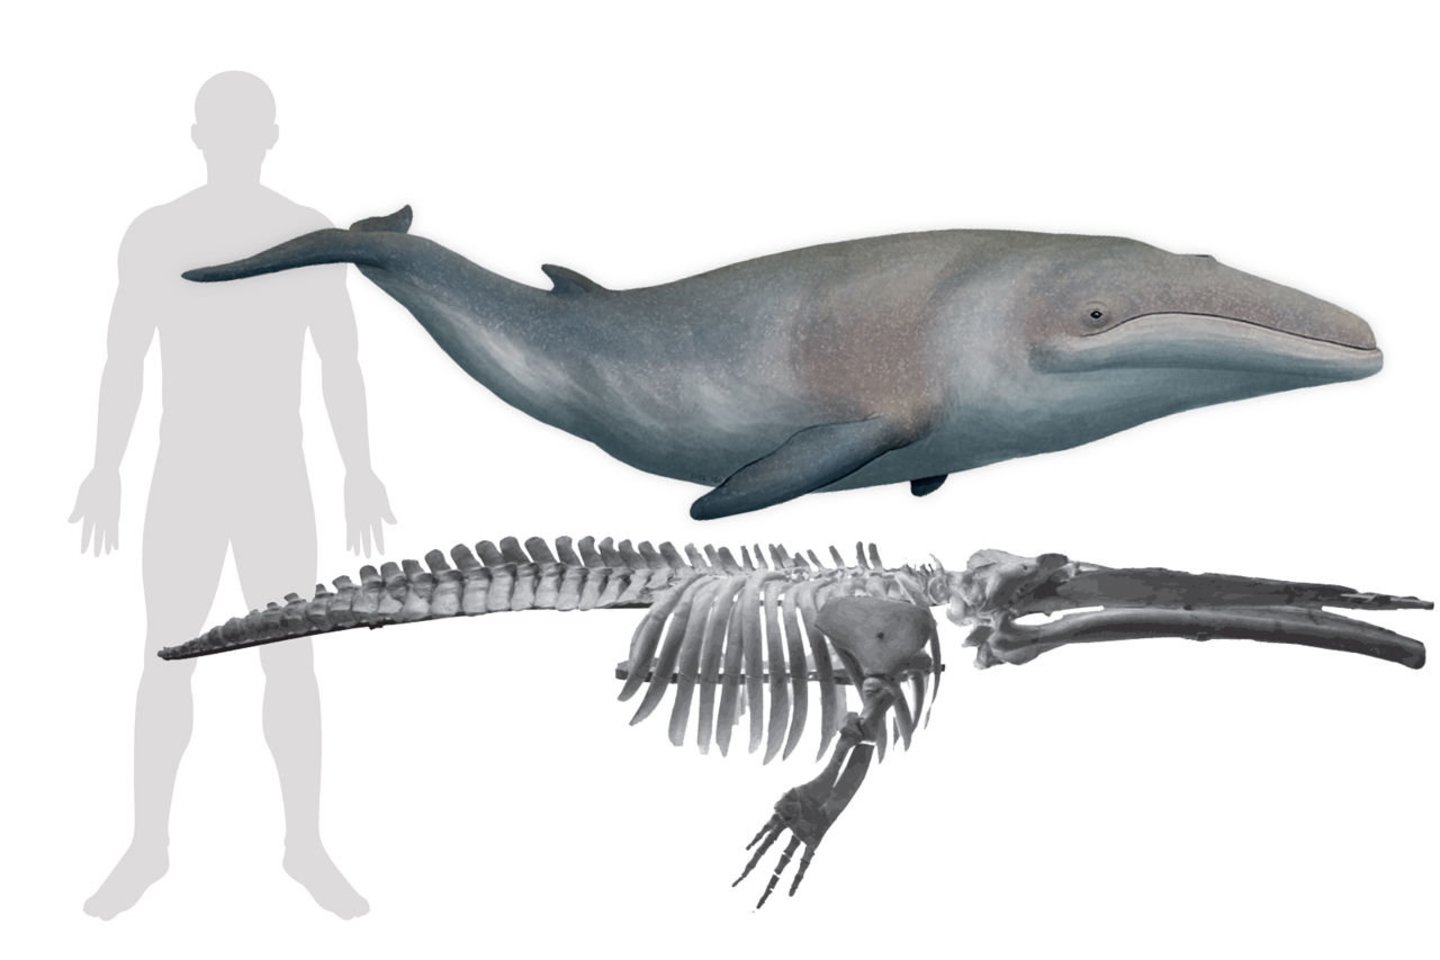  Paratečio jūra buvo daugiau niekur nerandamų rūšių namais, tarp kurių ir Cetotherium riabinini (žmogus šalia pavaizduotas dėl mastelio) - mažiausių pasaulyje fosilinių banginių.<br> Wikimedia commons